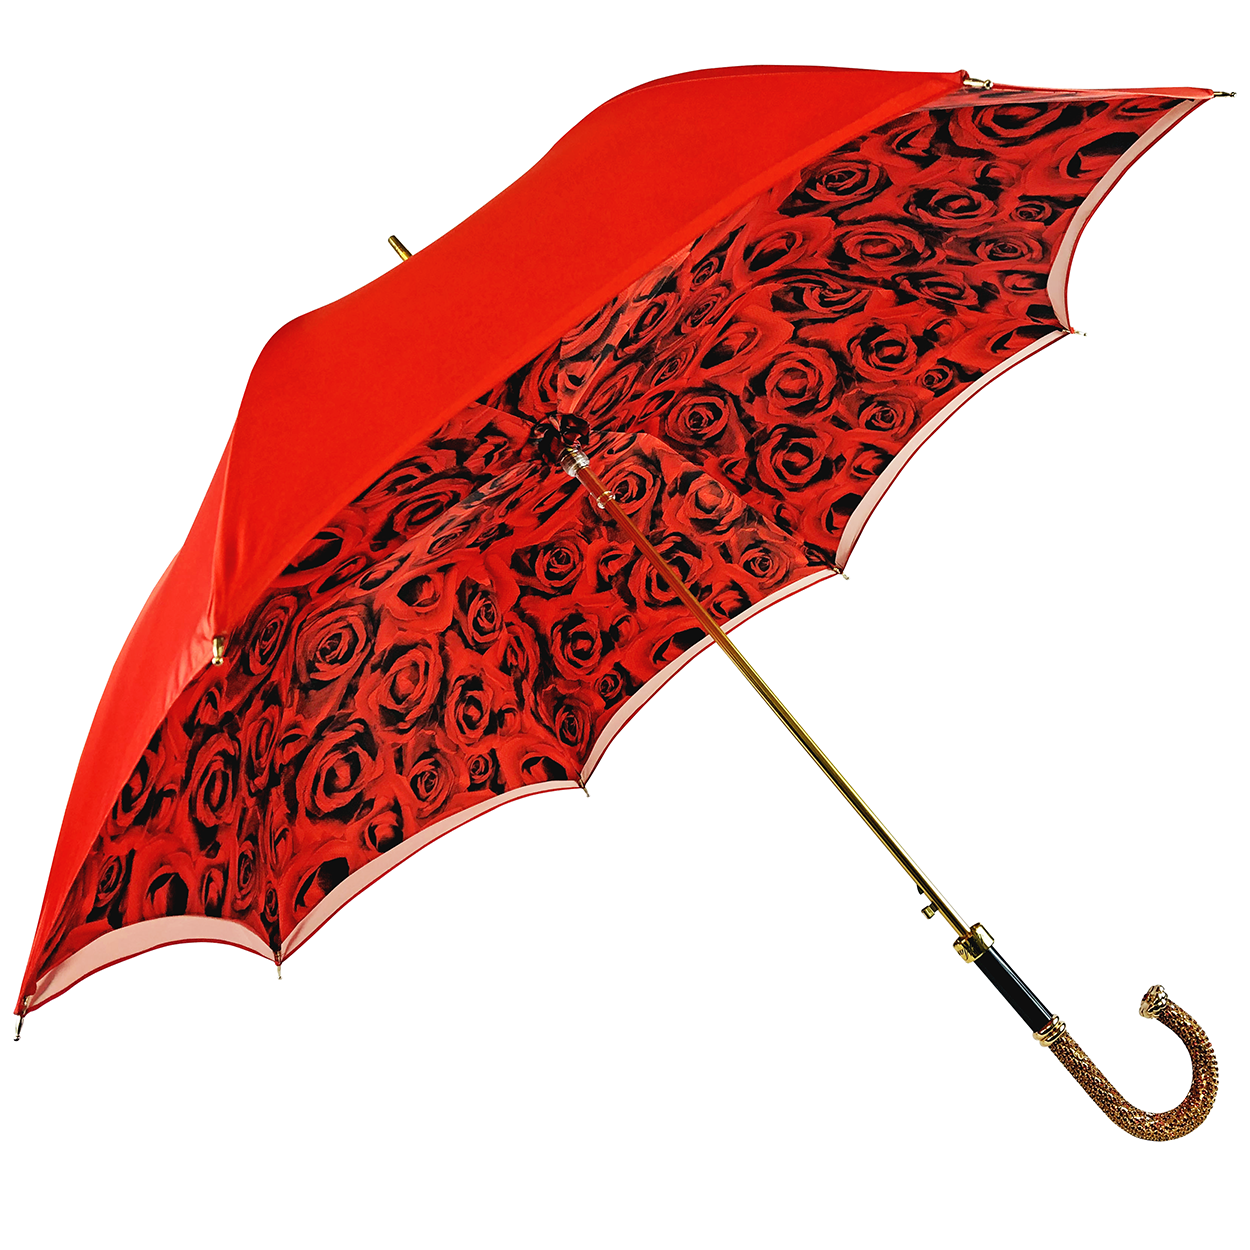 Romantic Umbrella with red Roses